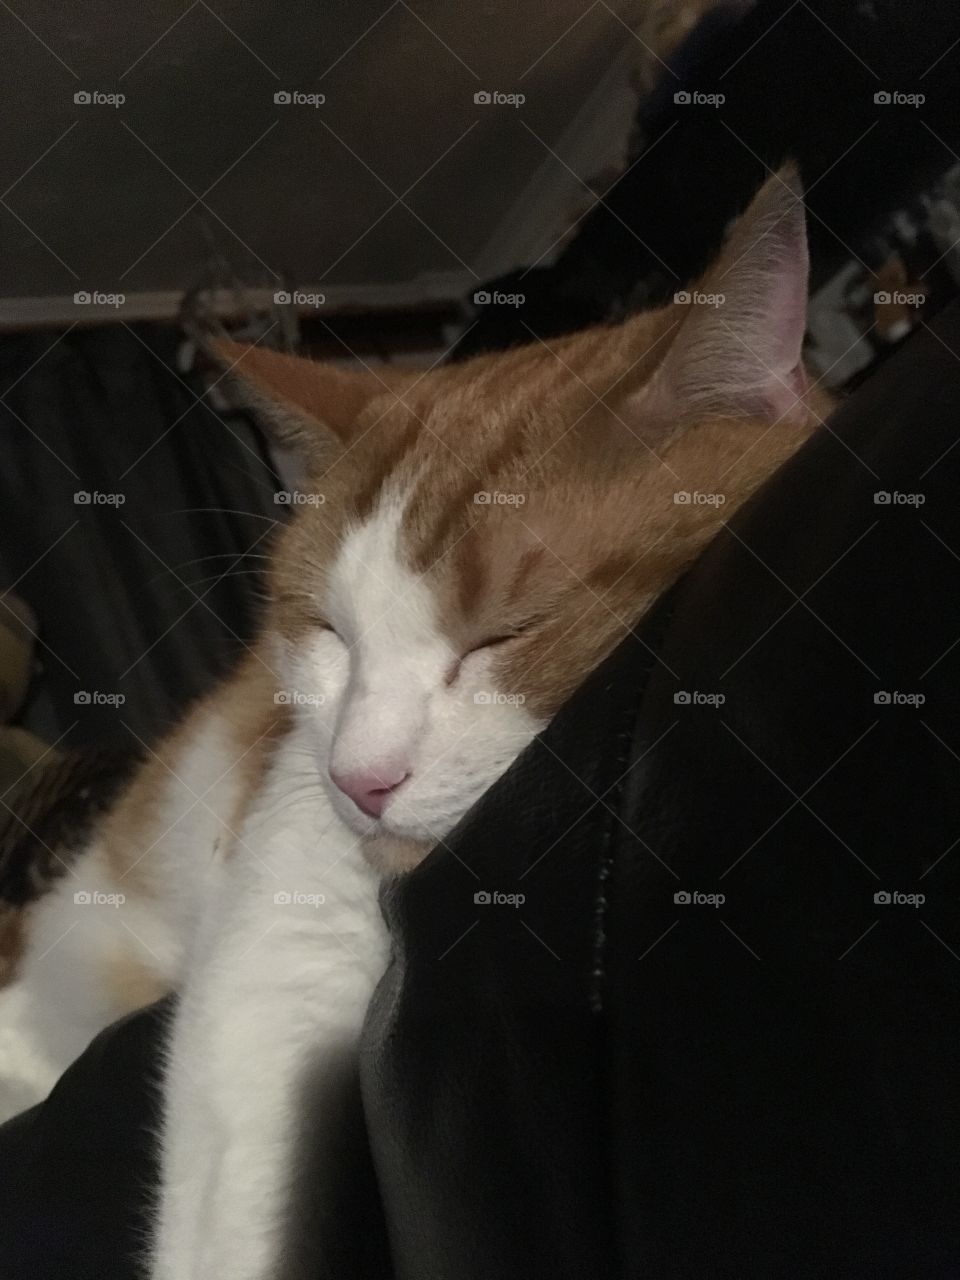 ginger sleeping cat